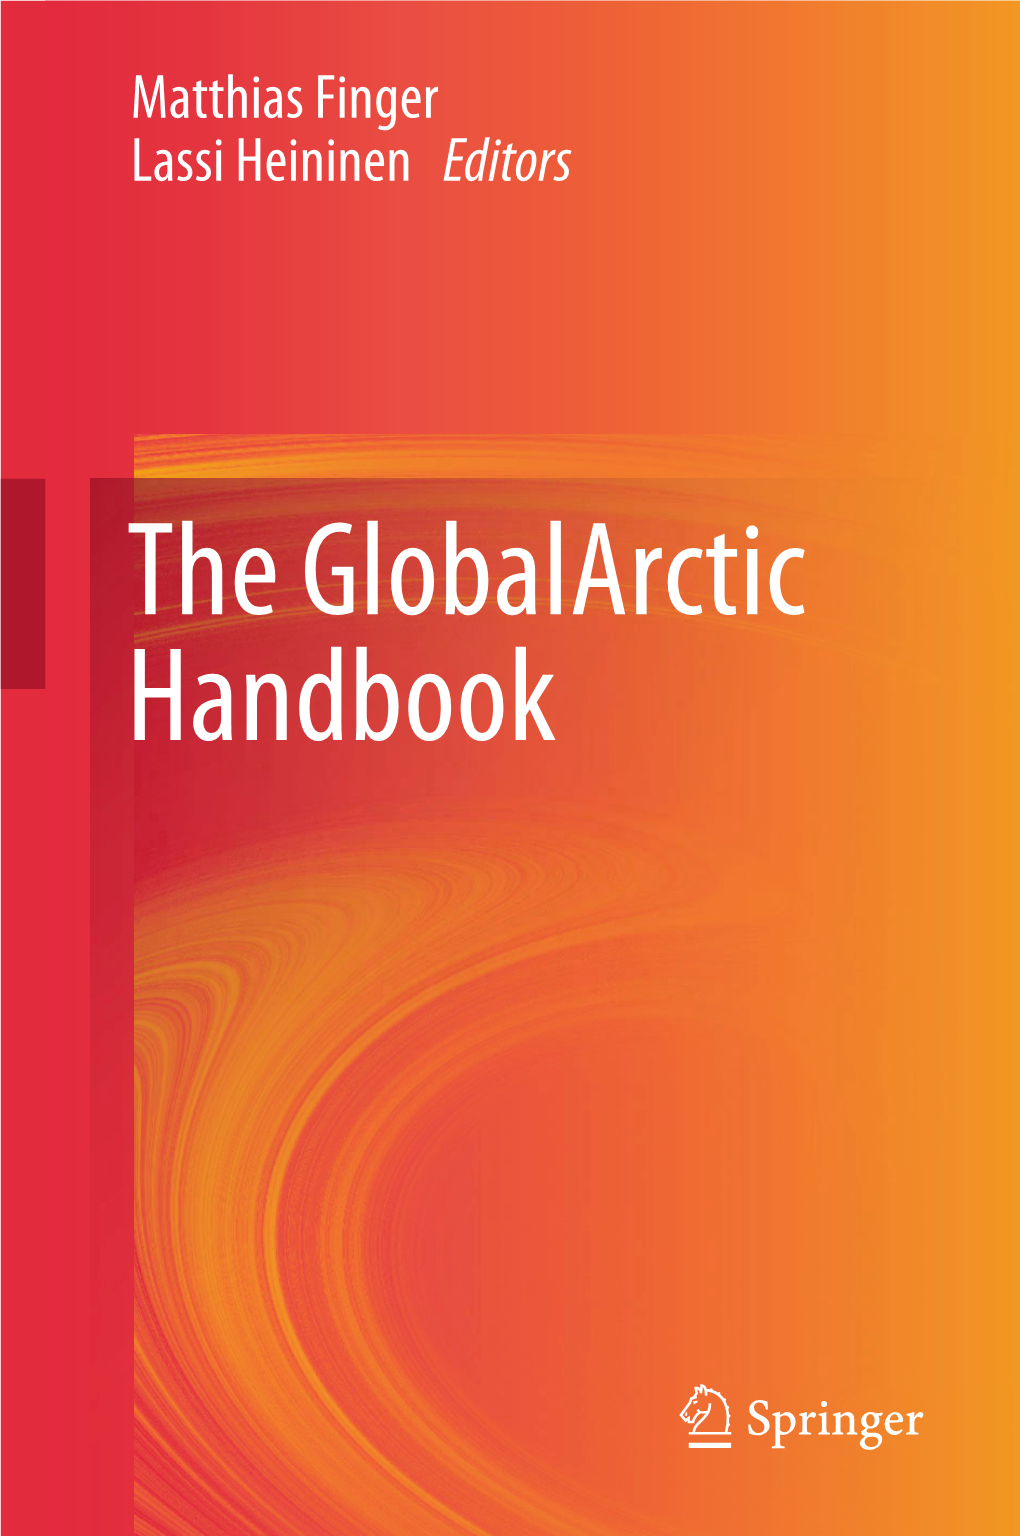 The Globalarctic Handbook the Globalarctic Handbook